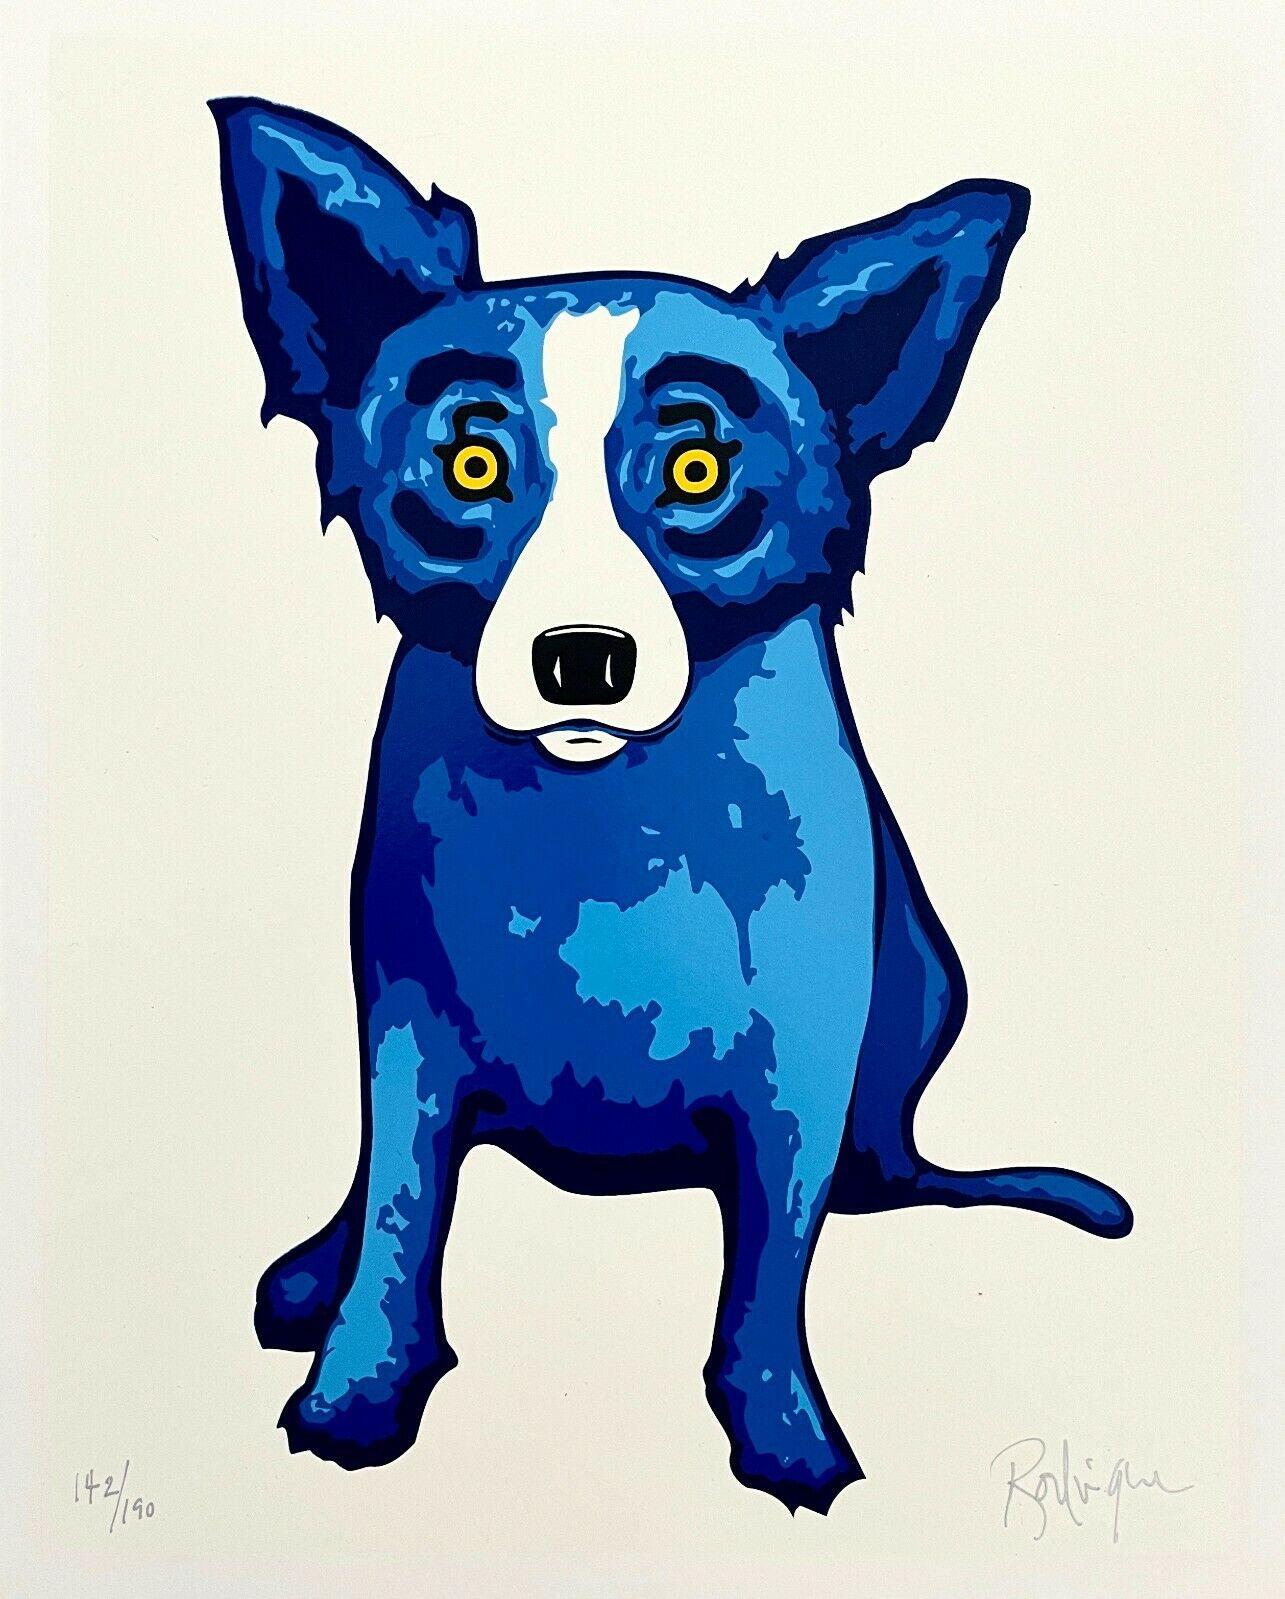 Künstler: George Rodrigues (1944-2013)
Titel: Reinheit der Seele (Serie Blue Dog)
Jahr: 2005
Auflage: 142/190, plus Probedrucke
Medium: Siebdruck auf Archivierungspapier
Größe: 15 x 12 Zoll
Zustand: Ausgezeichnet
Beschriftung: Signiert und